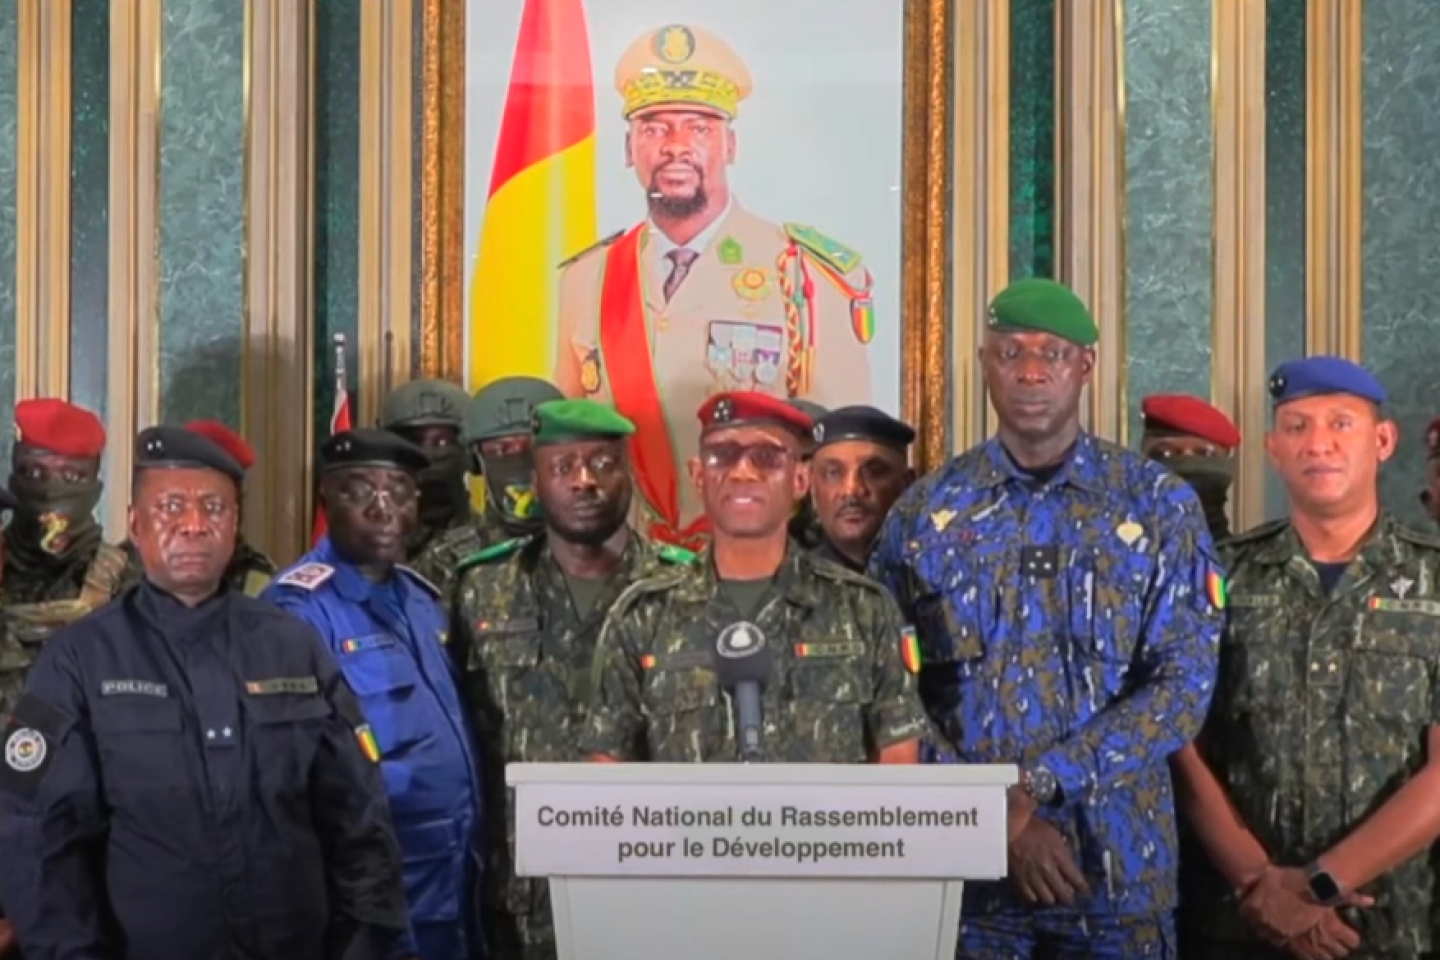 En Guinée, la junte dissout le gouvernement sur fond de crise sociale et de querelle d’ego